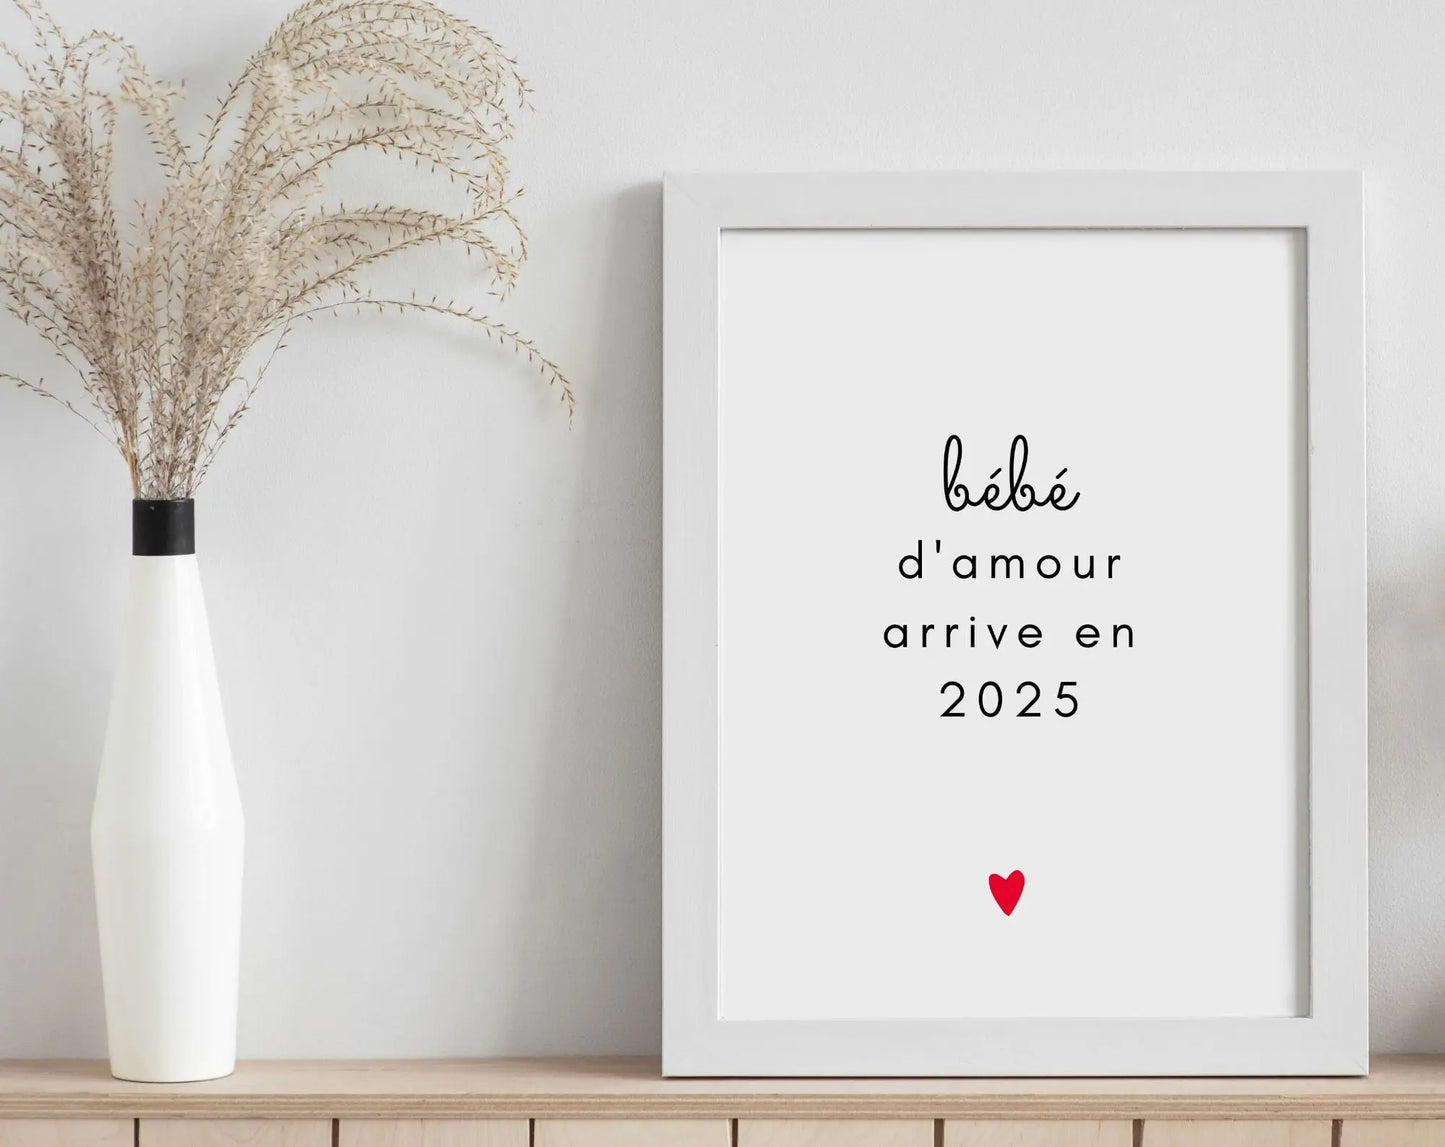 Bébé d'amour arrive en 2025 - Annonce grossesse originale FLTMfrance